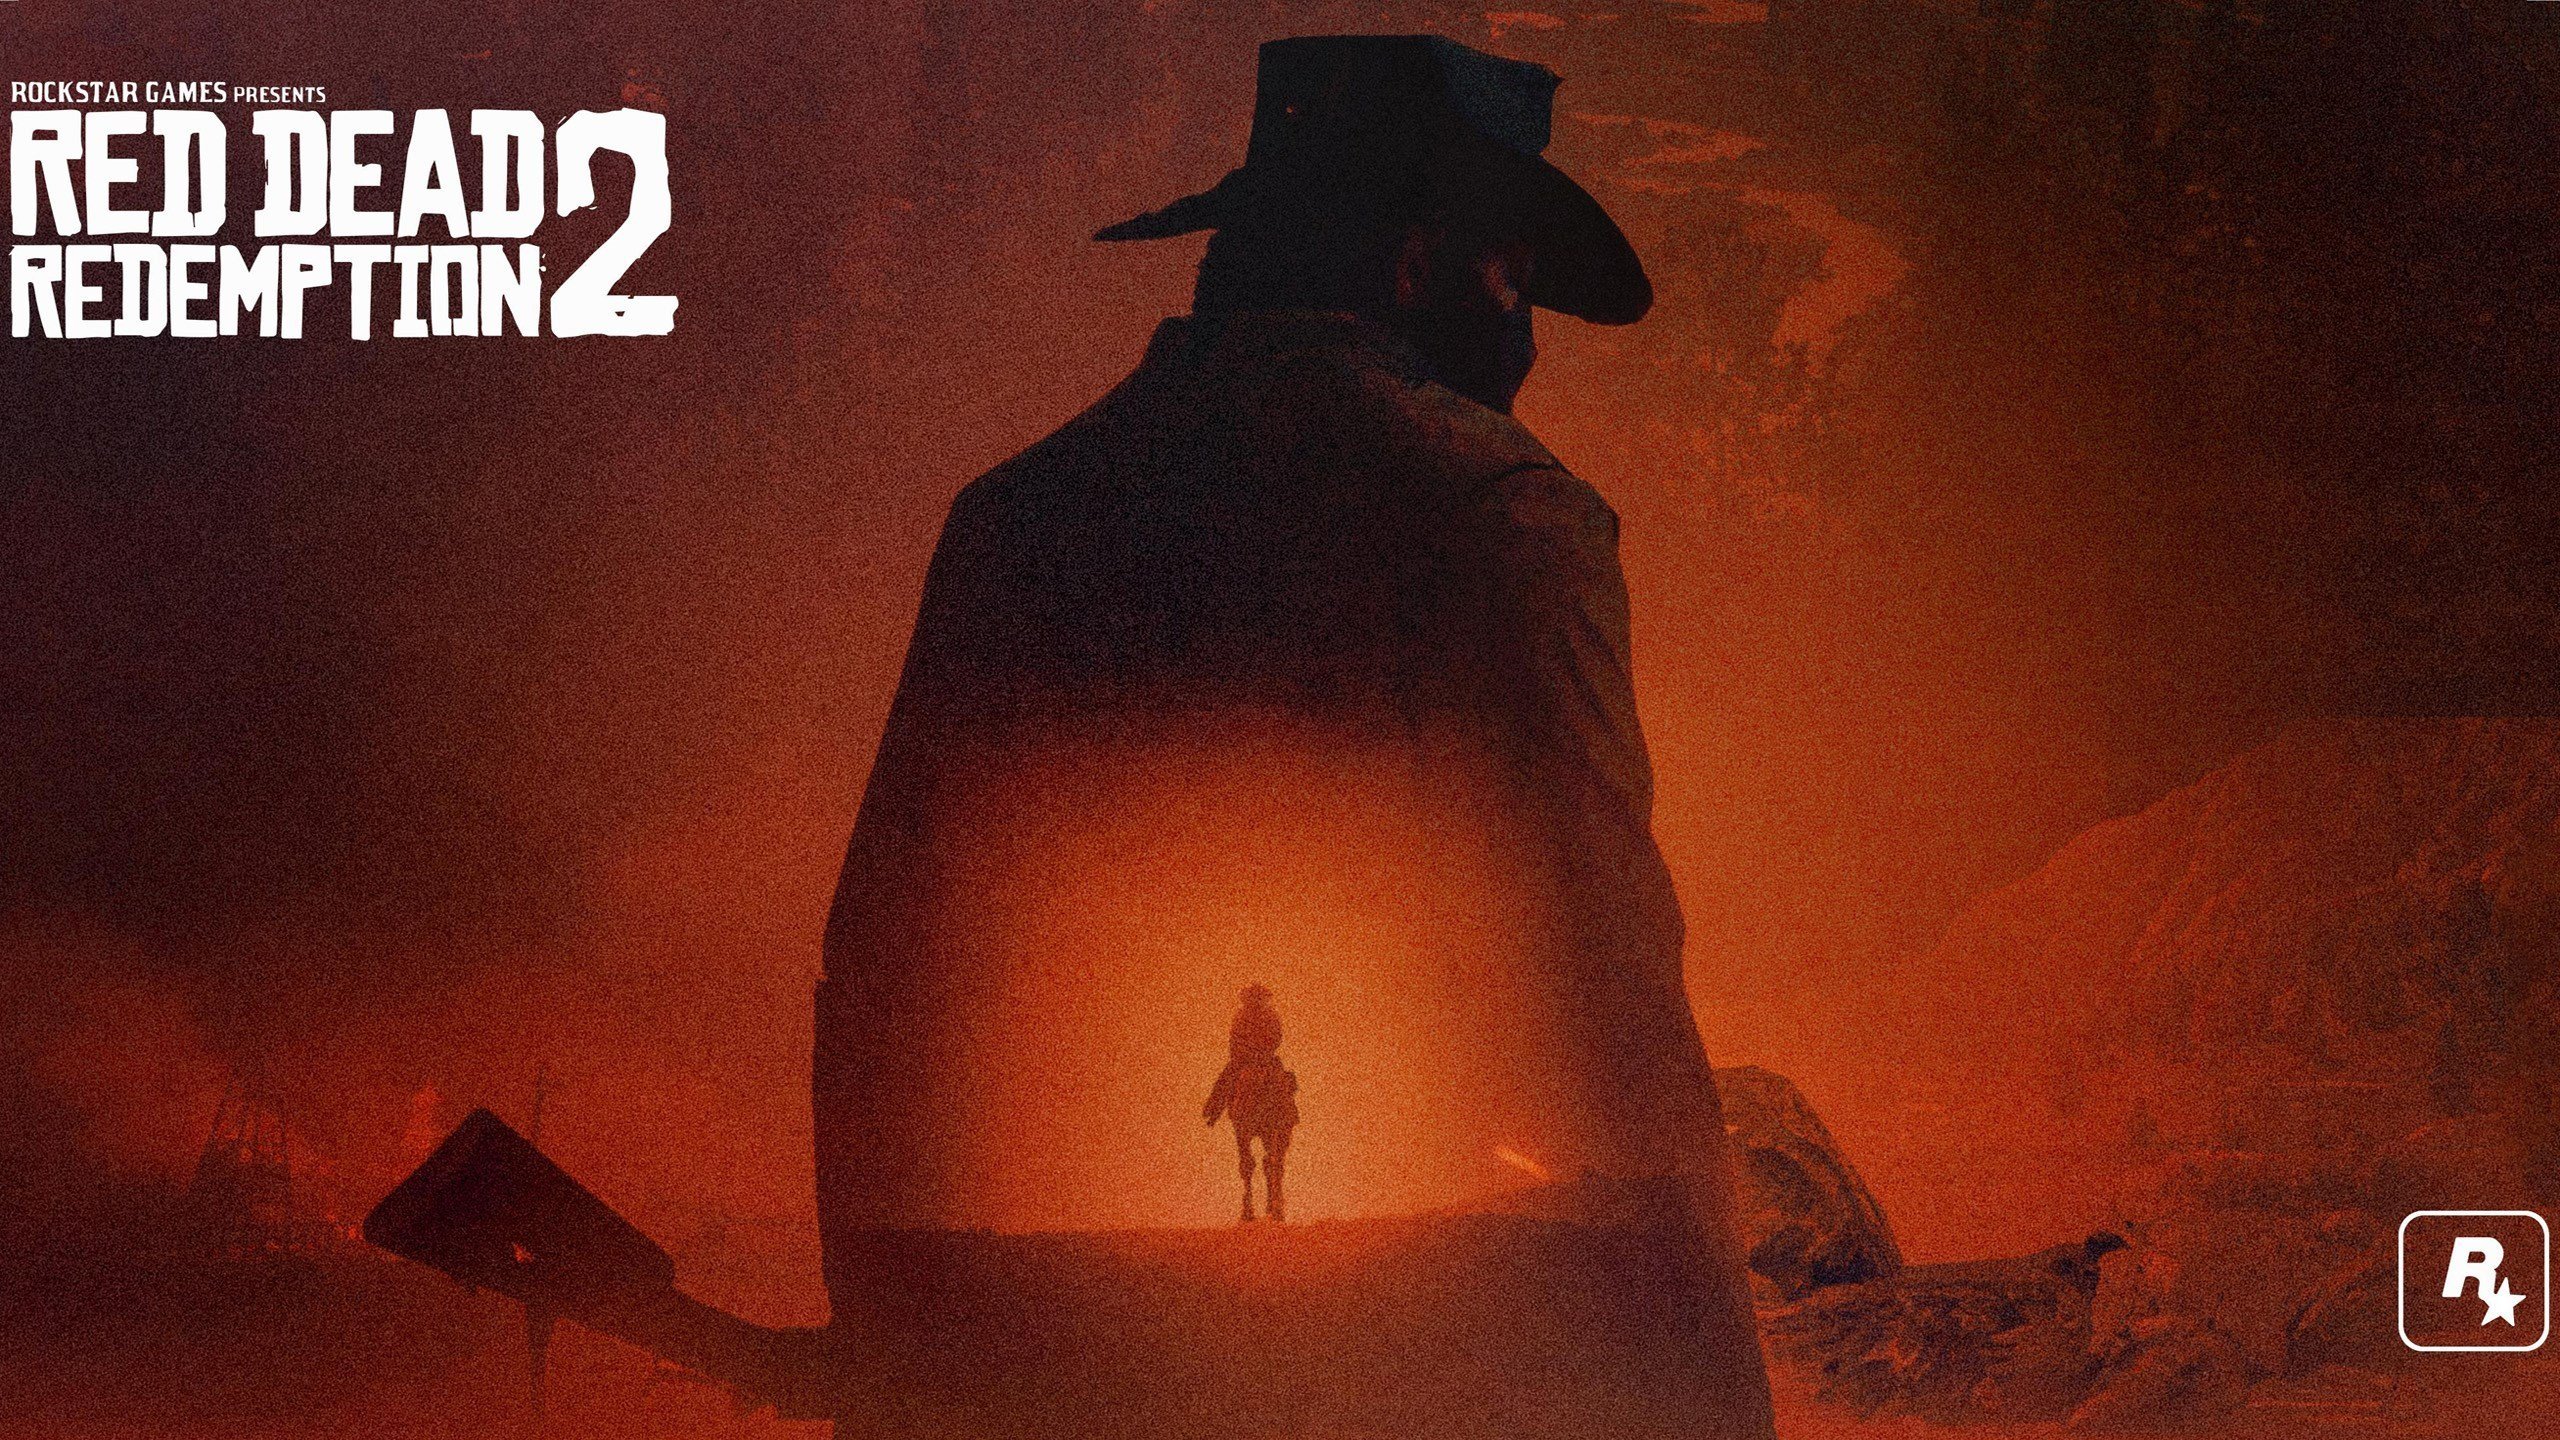 Red Dead Redemption 2 Wallpaper 4k For Desktop, iPhone